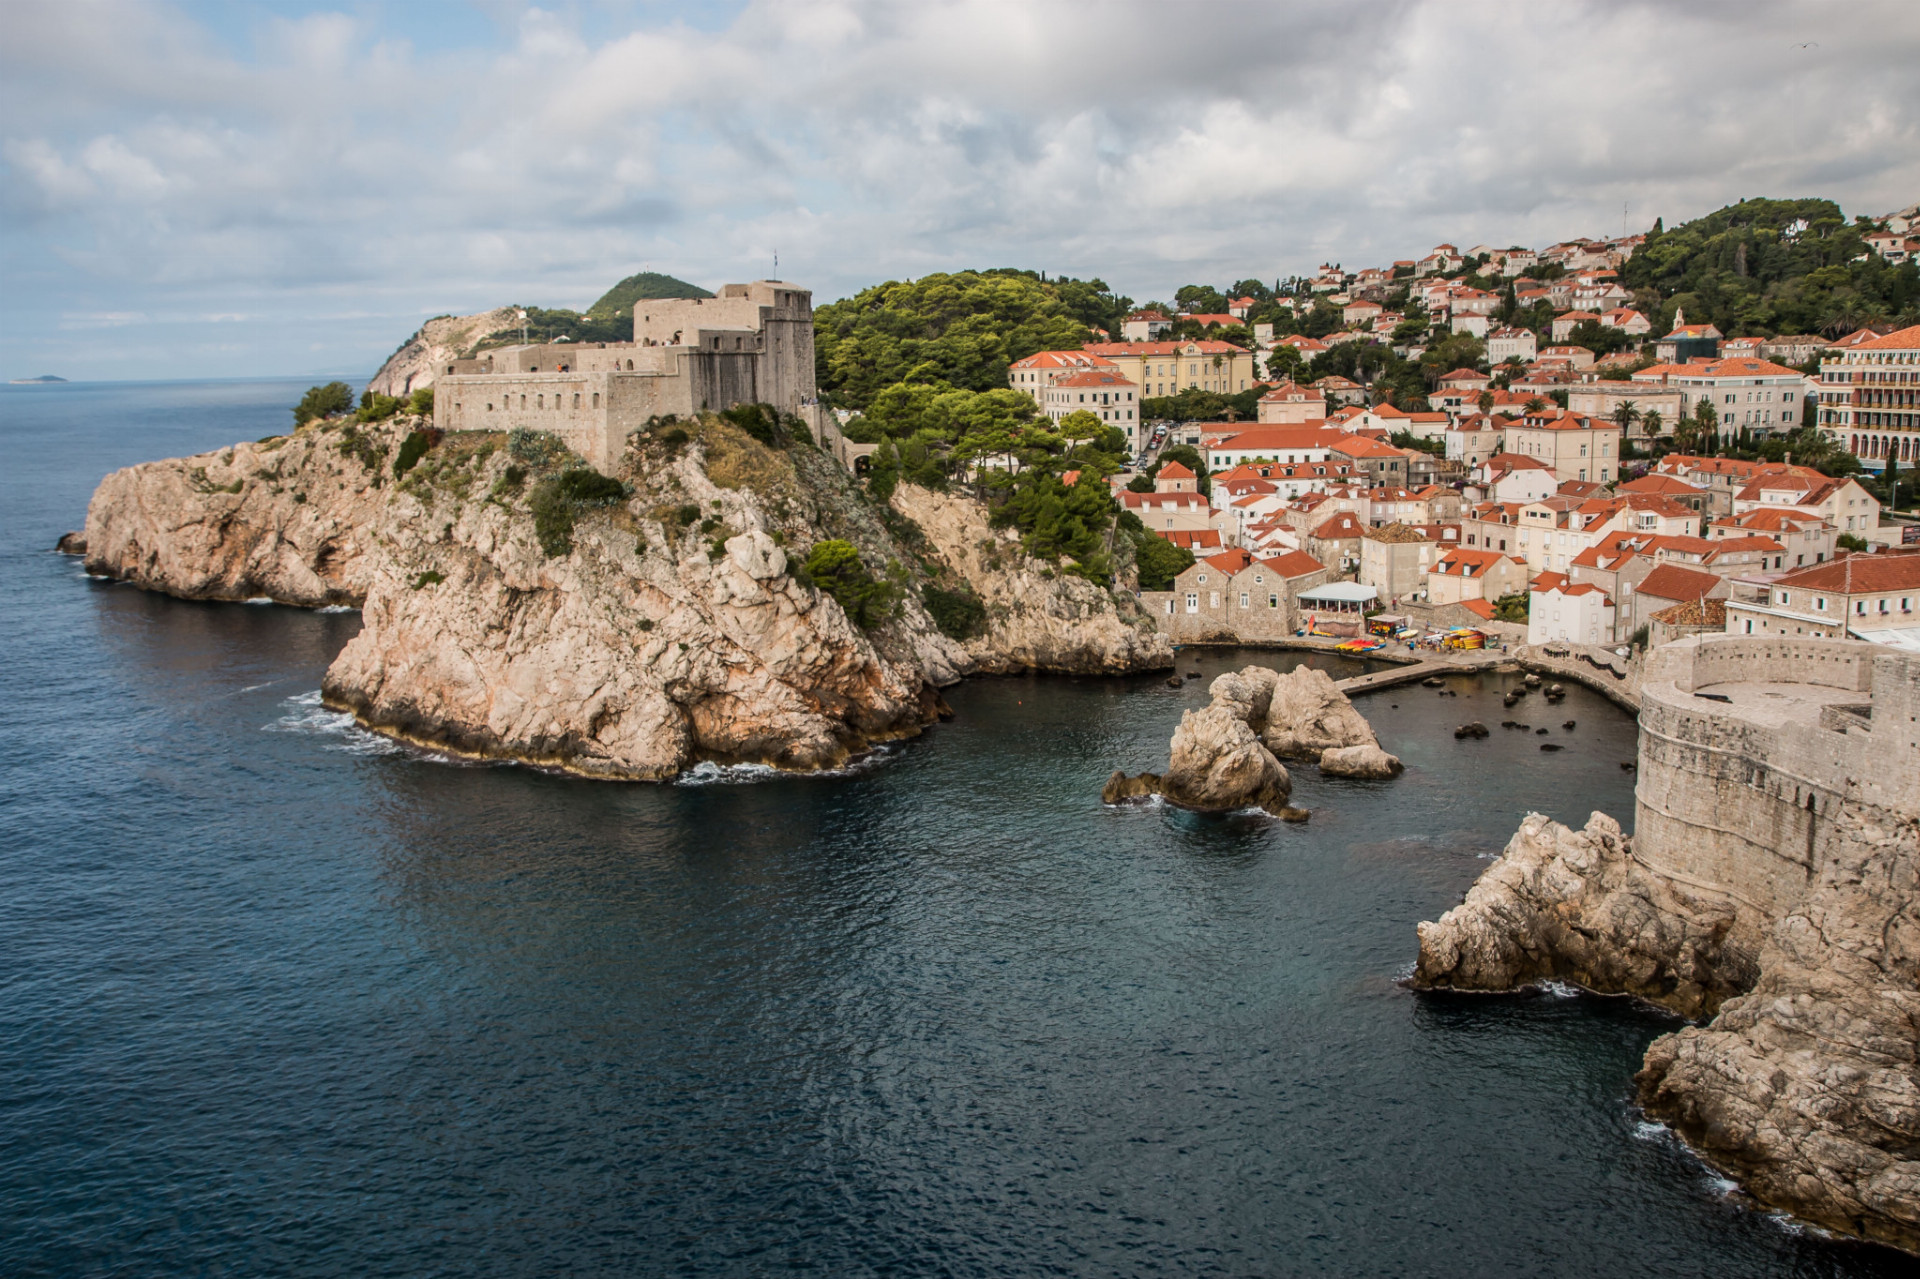 Davy turistov odišli, teploty klesajú, rovnako je to aj s cenami. Vychutnajte si krásne pláže Dubrovniku aj na jeseň. Región okrem toho ponúka aj príjemné horské túry s ohromujúcou scenériou. 
